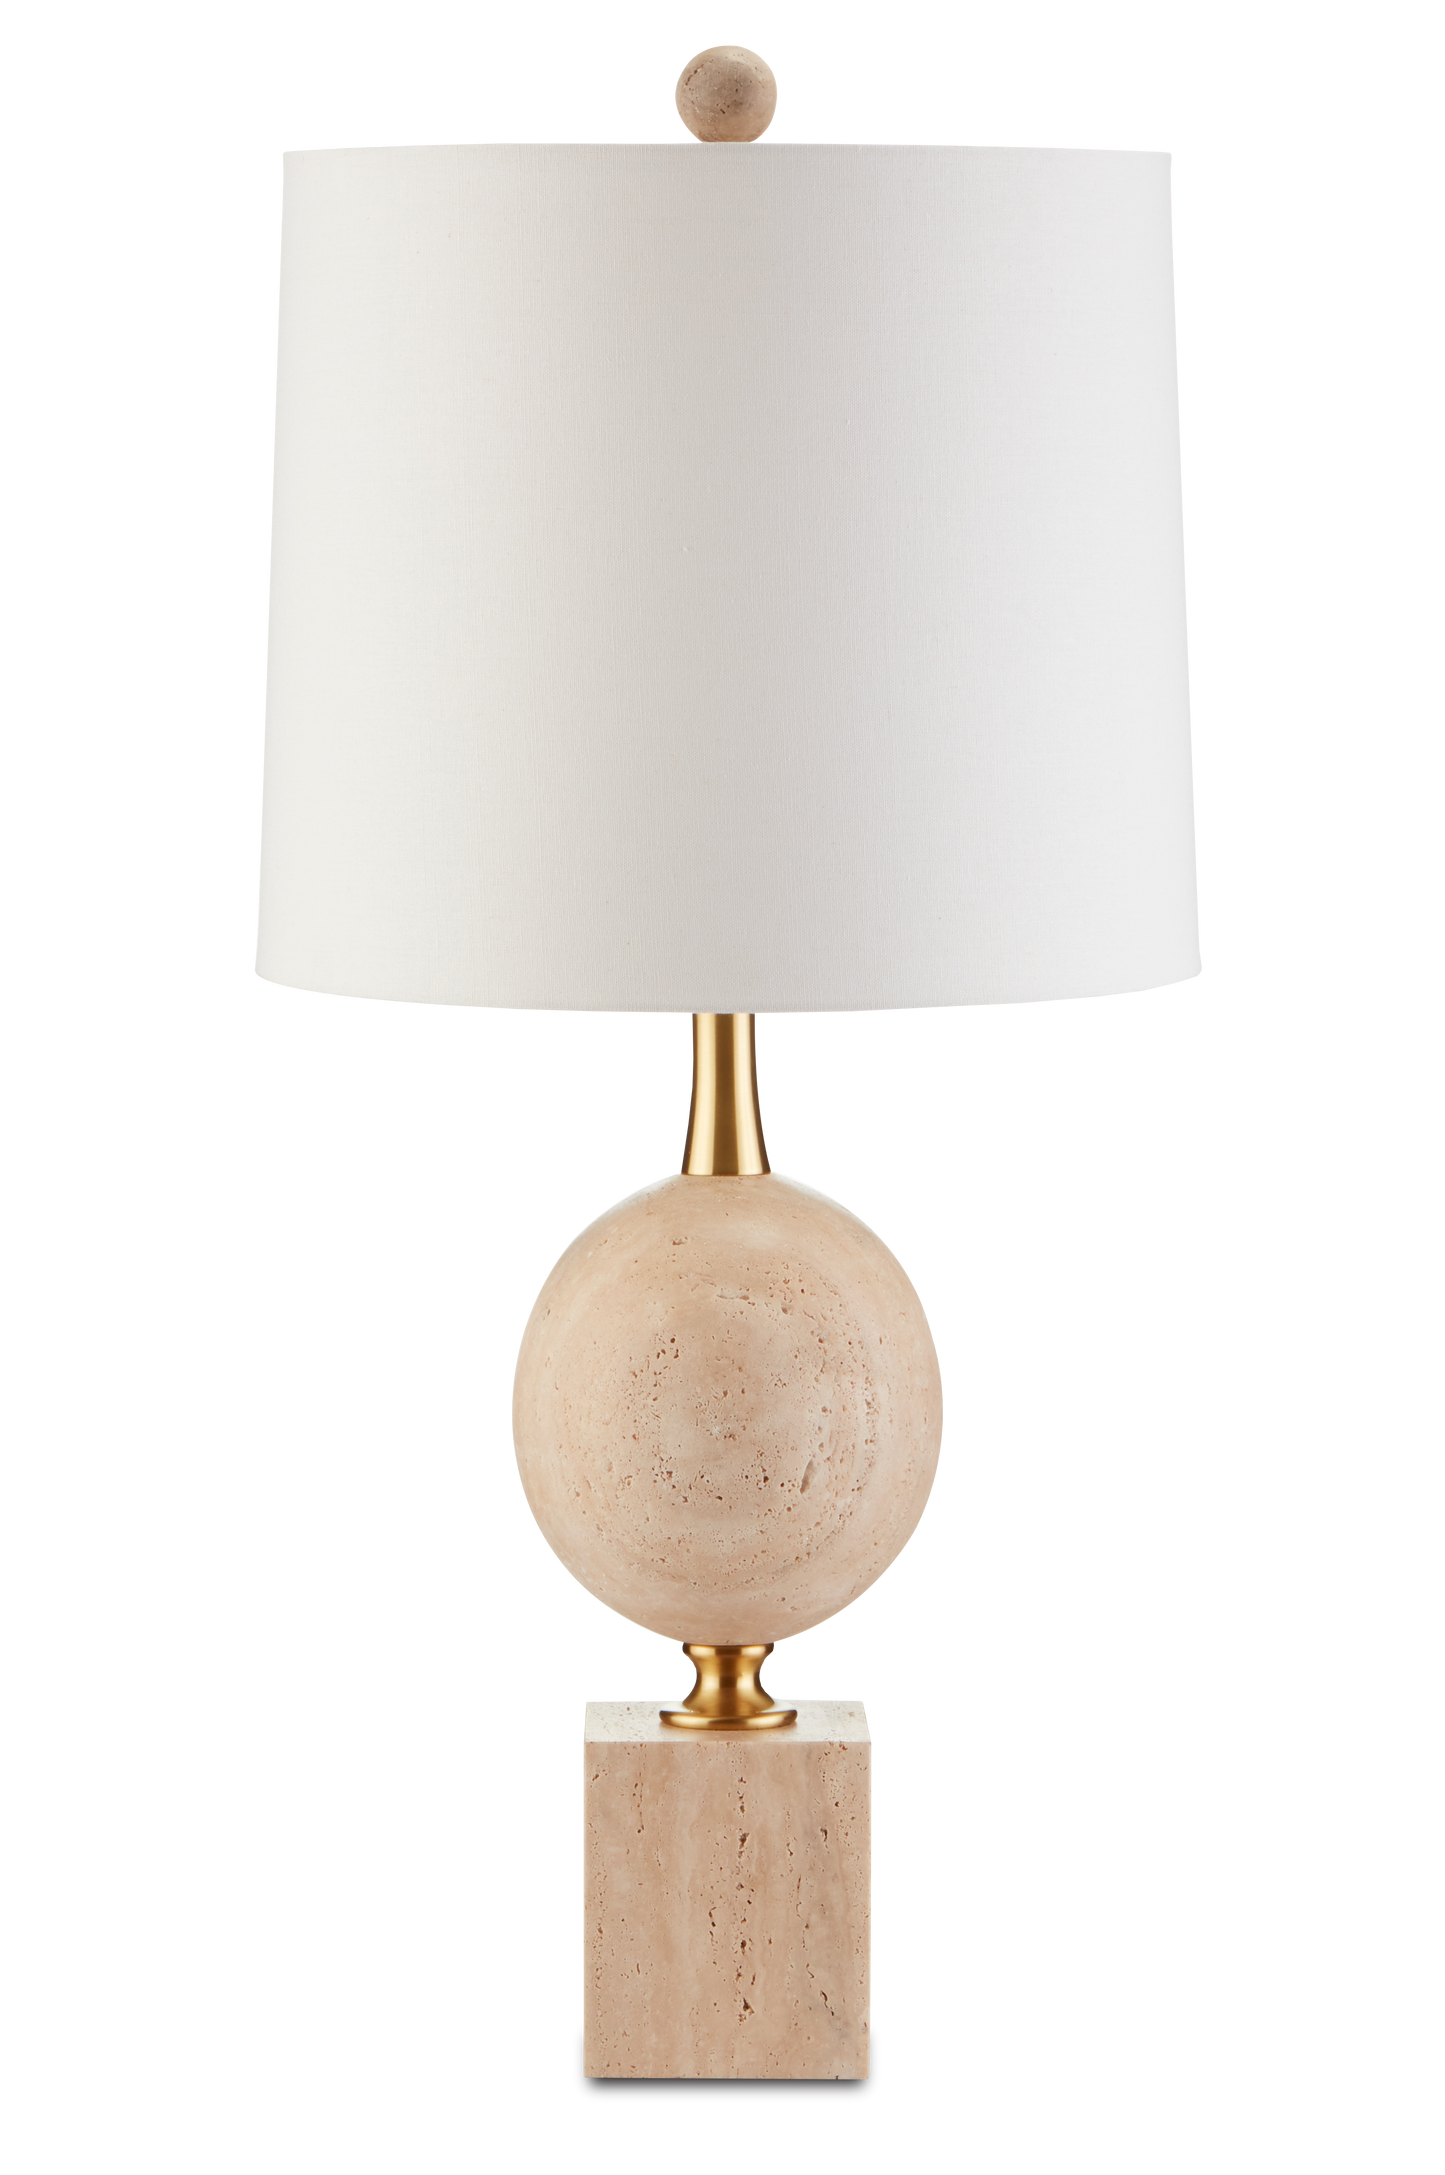 Adorno Table Lamp